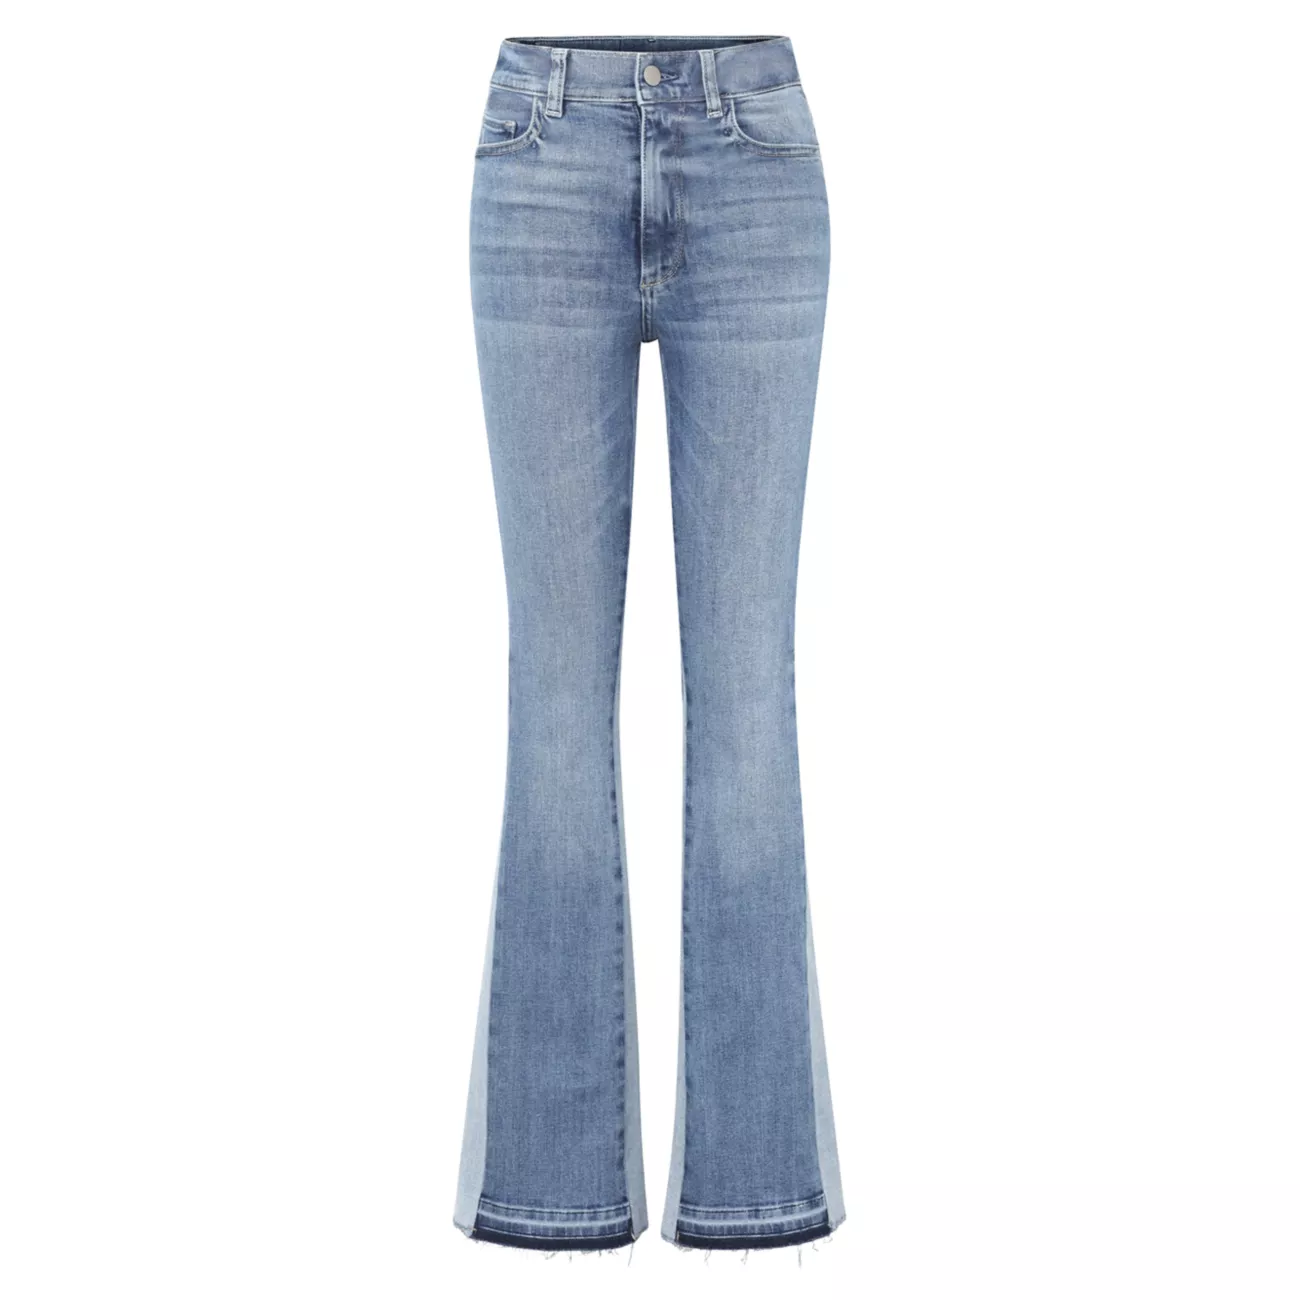 Облегающие джинсы Bridget Instasculpt Bootcut DL1961